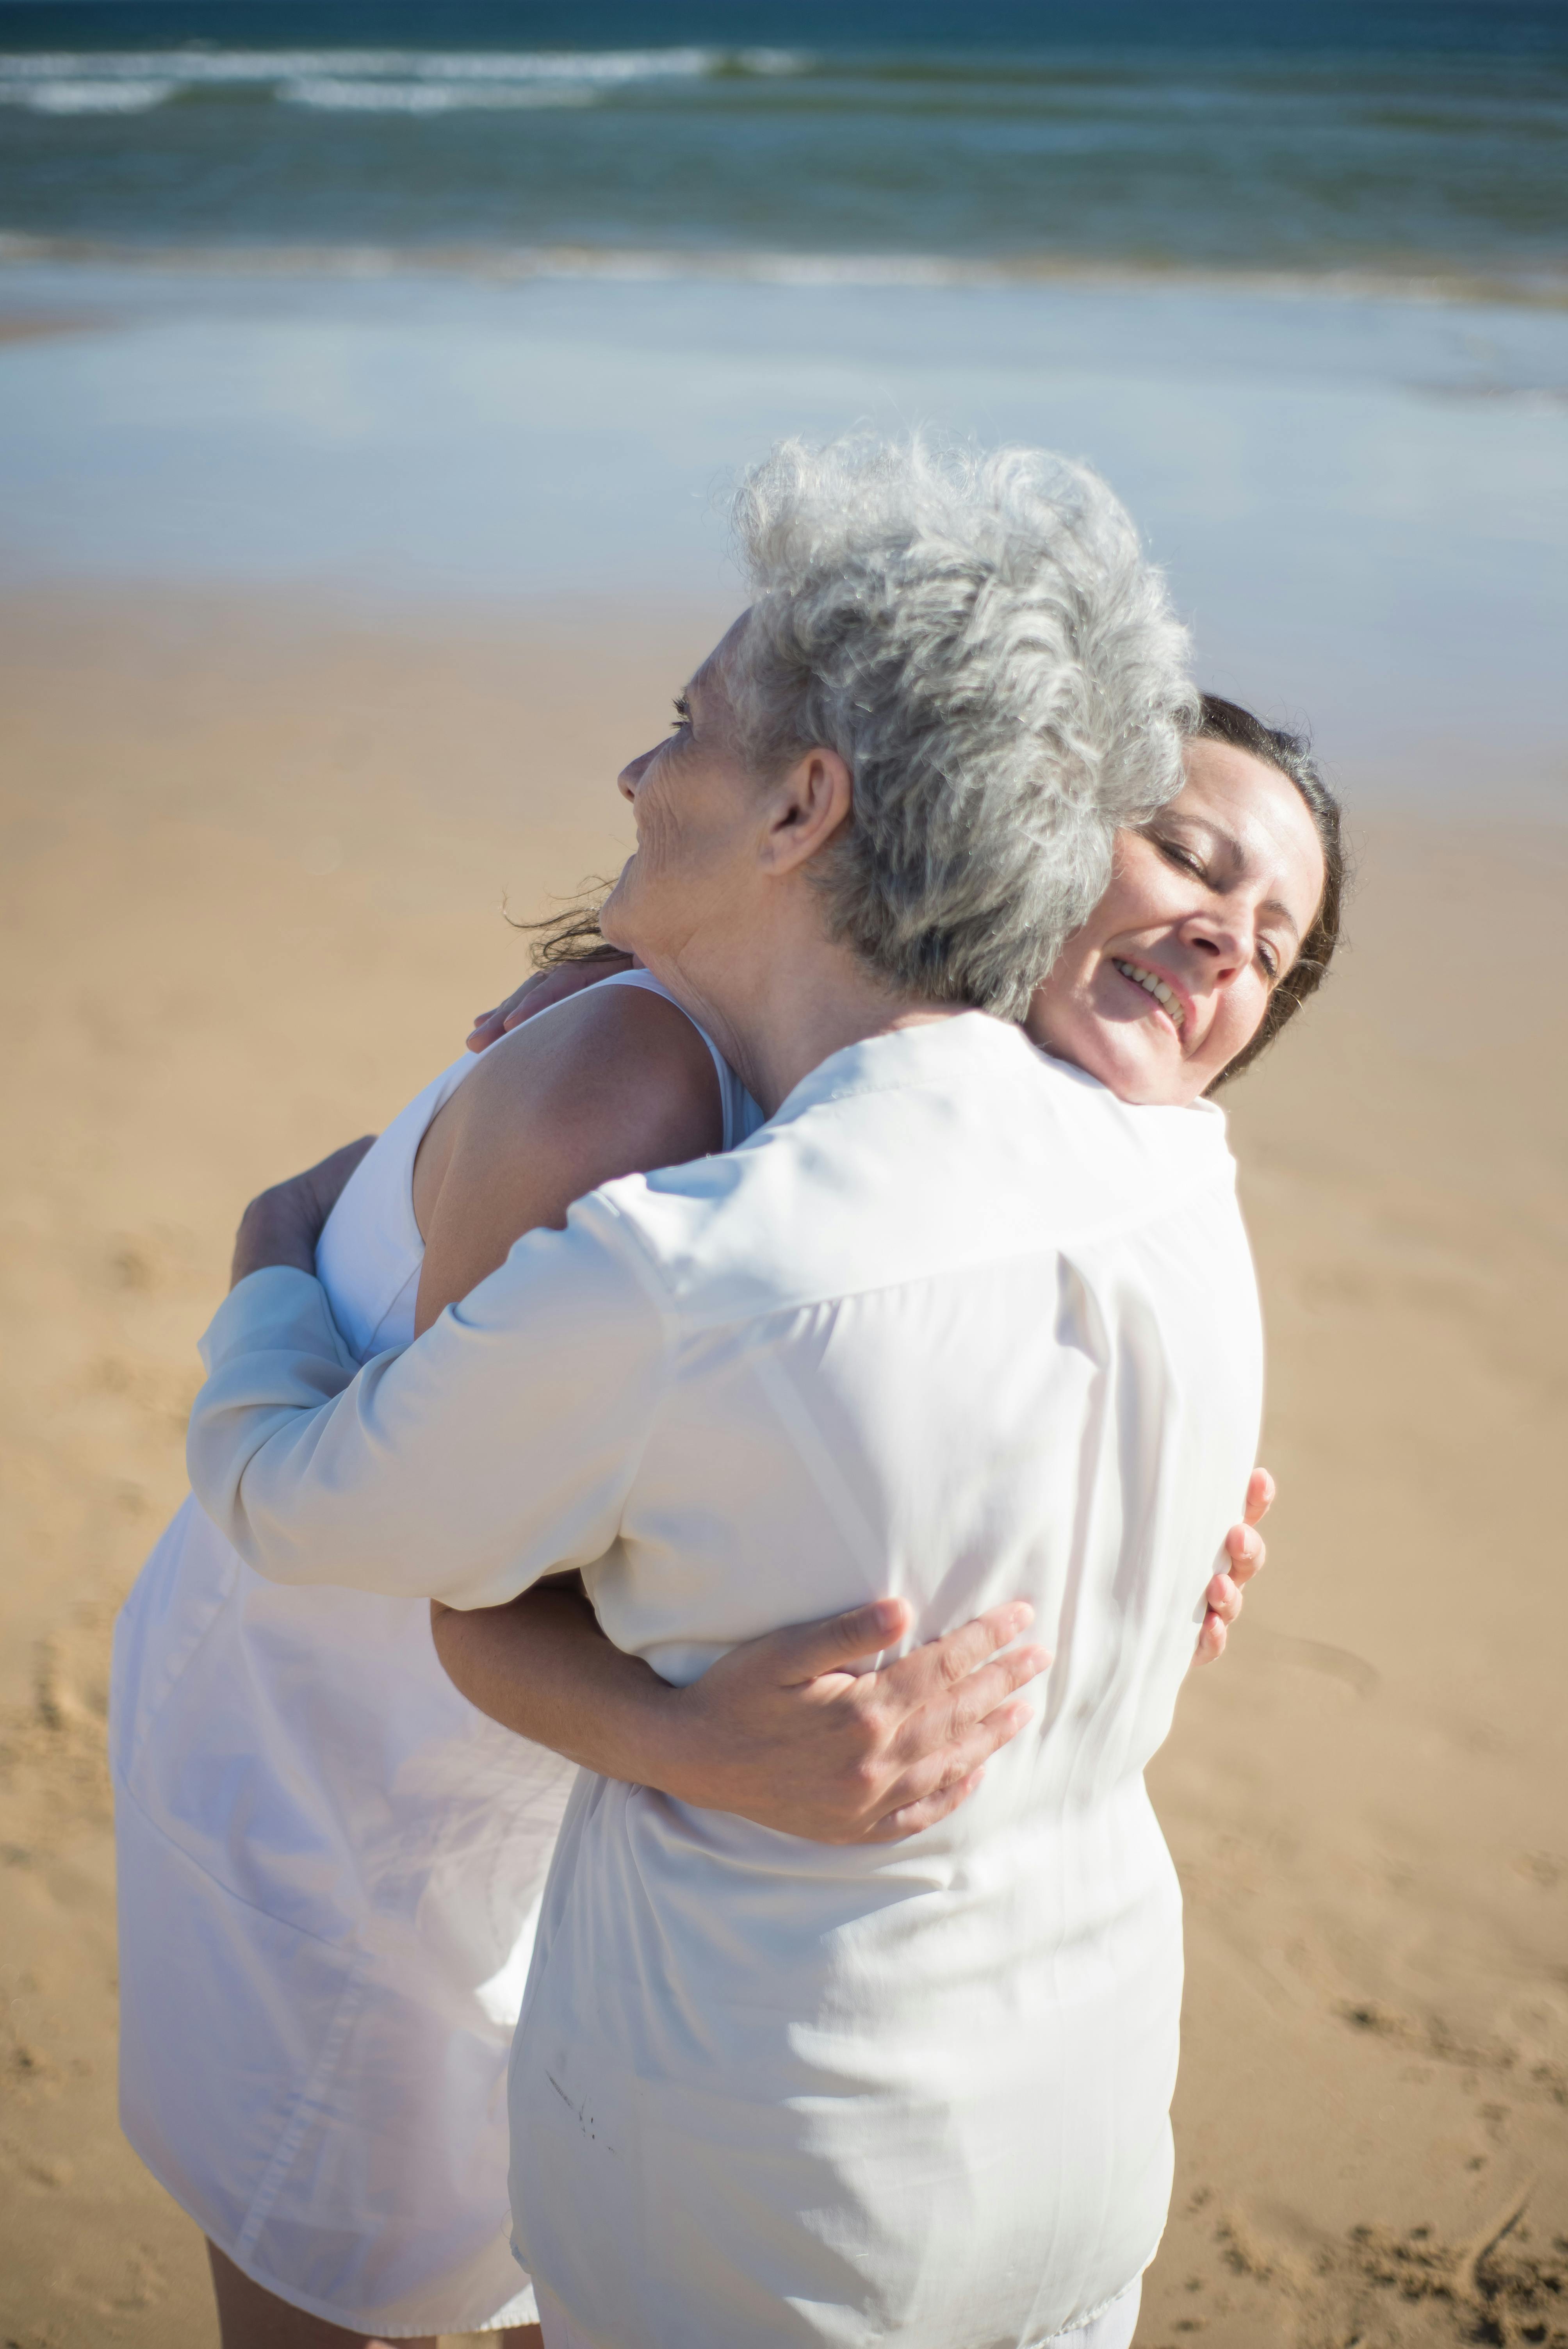 Eine ältere Frau, die eine jüngere umarmt | Quelle: Pexels